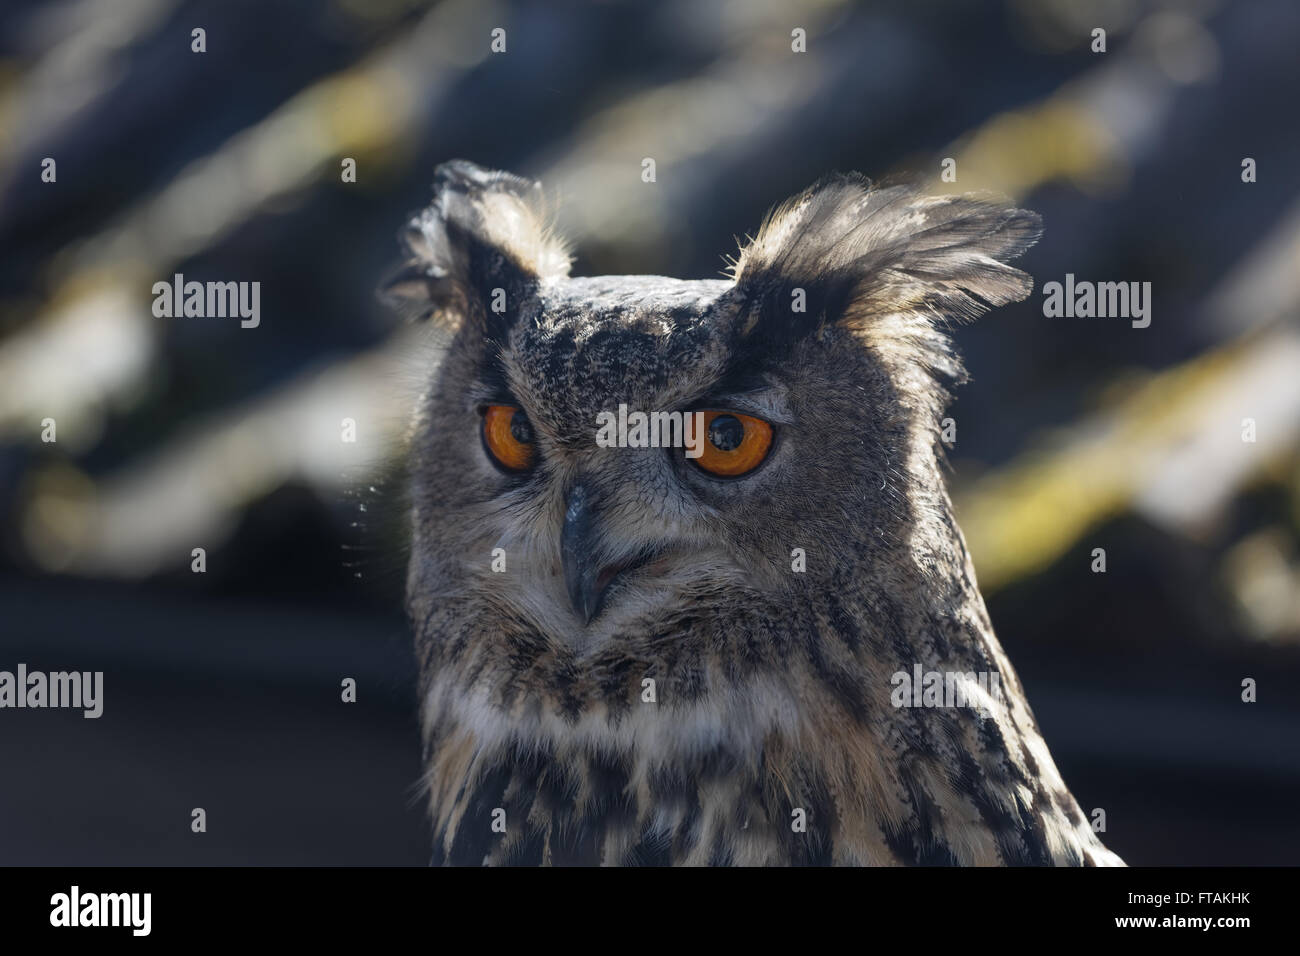 Eagle owl head up close. Stock Photo